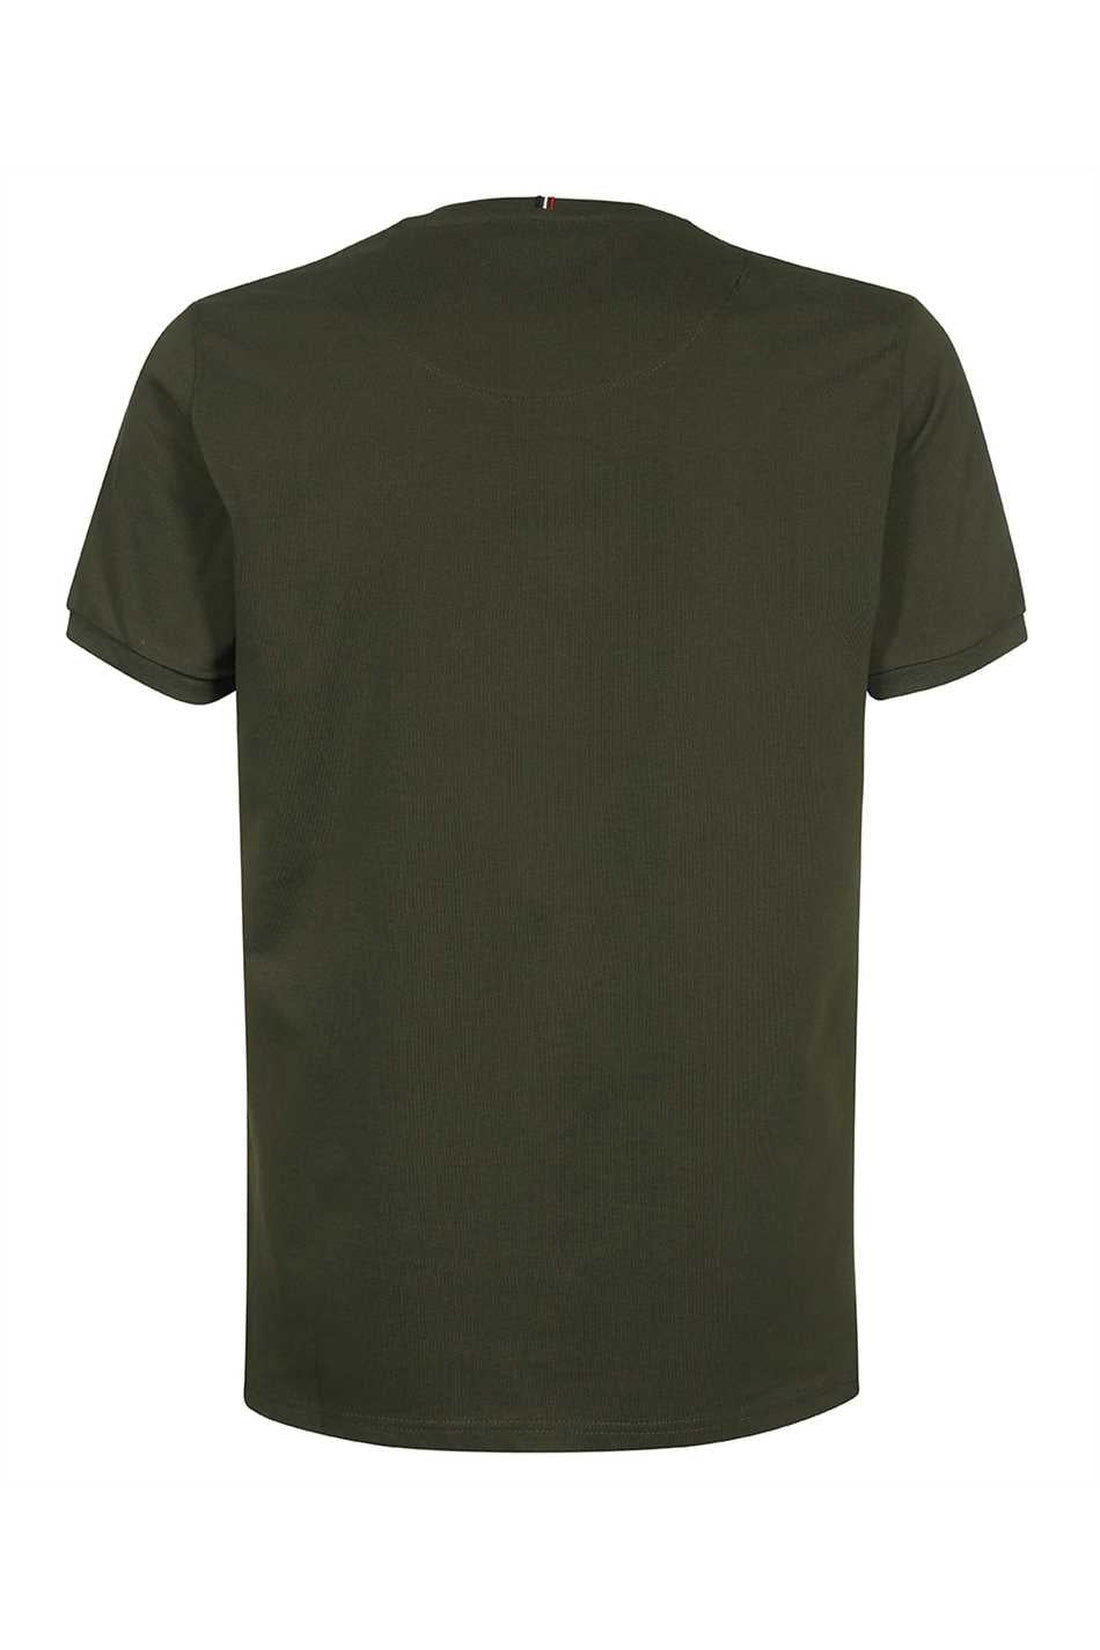 Les Deux-OUTLET-SALE-Nørregaard cotton crew-neck T-shirt-ARCHIVIST